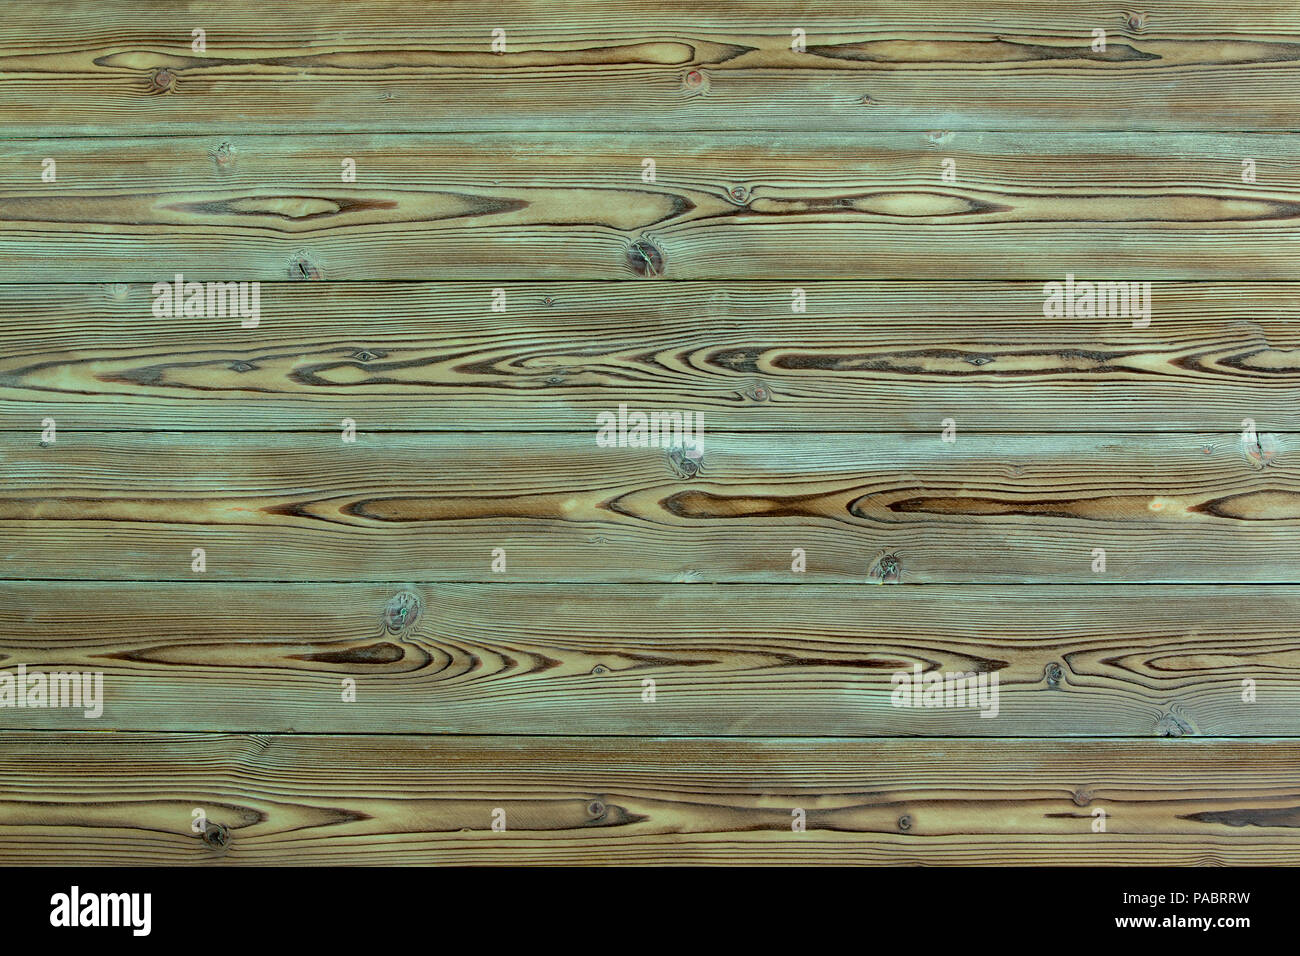 Bois de pin vieilli fond avec les restes de peinture ou de teinture bleu turquoise et un motif de décoration en bois dans une vue plein cadre Banque D'Images